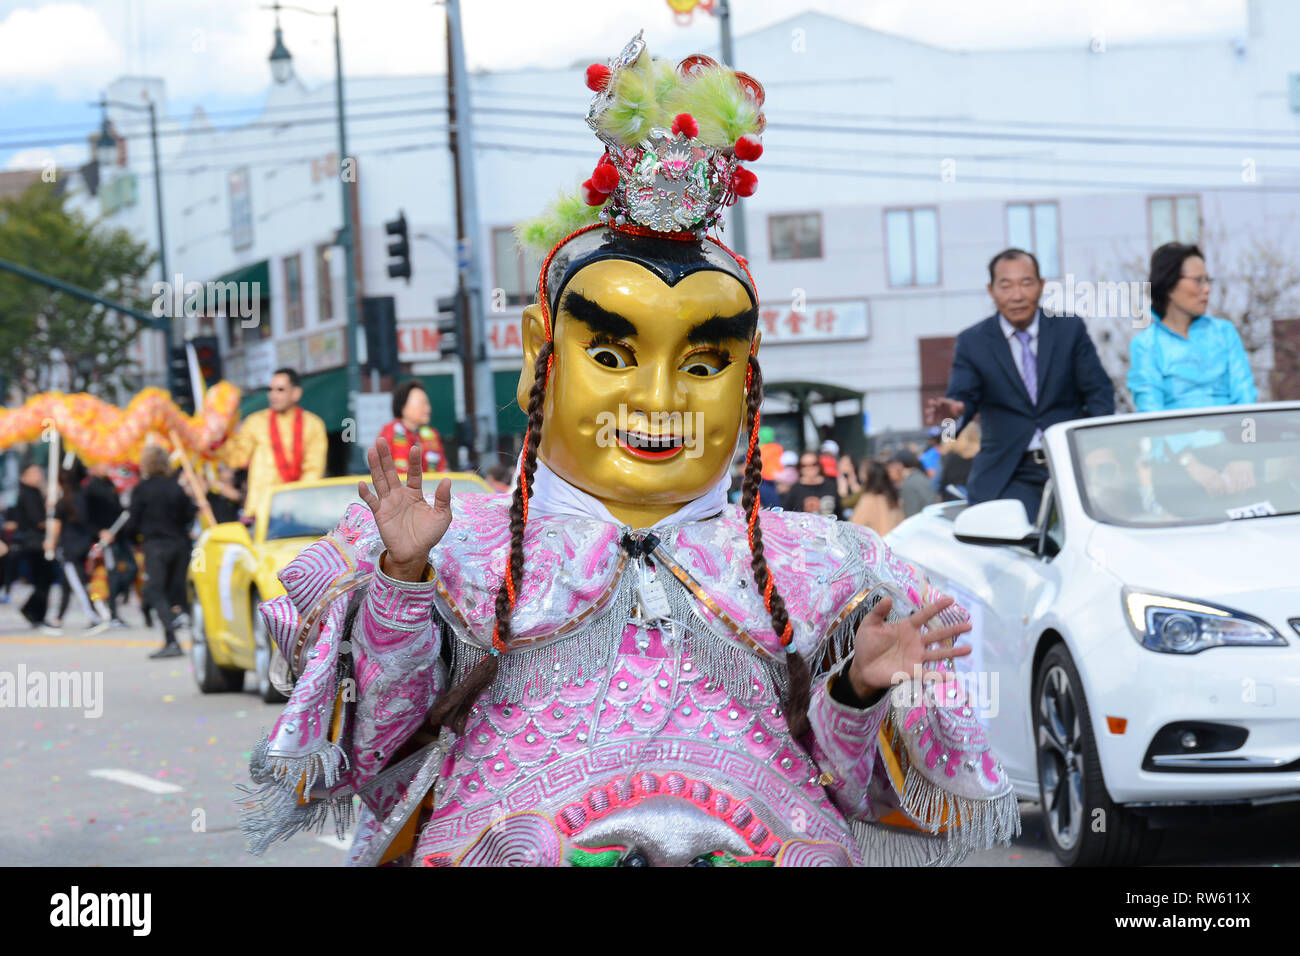 LOS ANGELES - le 9 février 2019 : Caractère masqué et costumé au Los Angeles Golden Dragon Parade, célébrer le Nouvel An chinois Banque D'Images